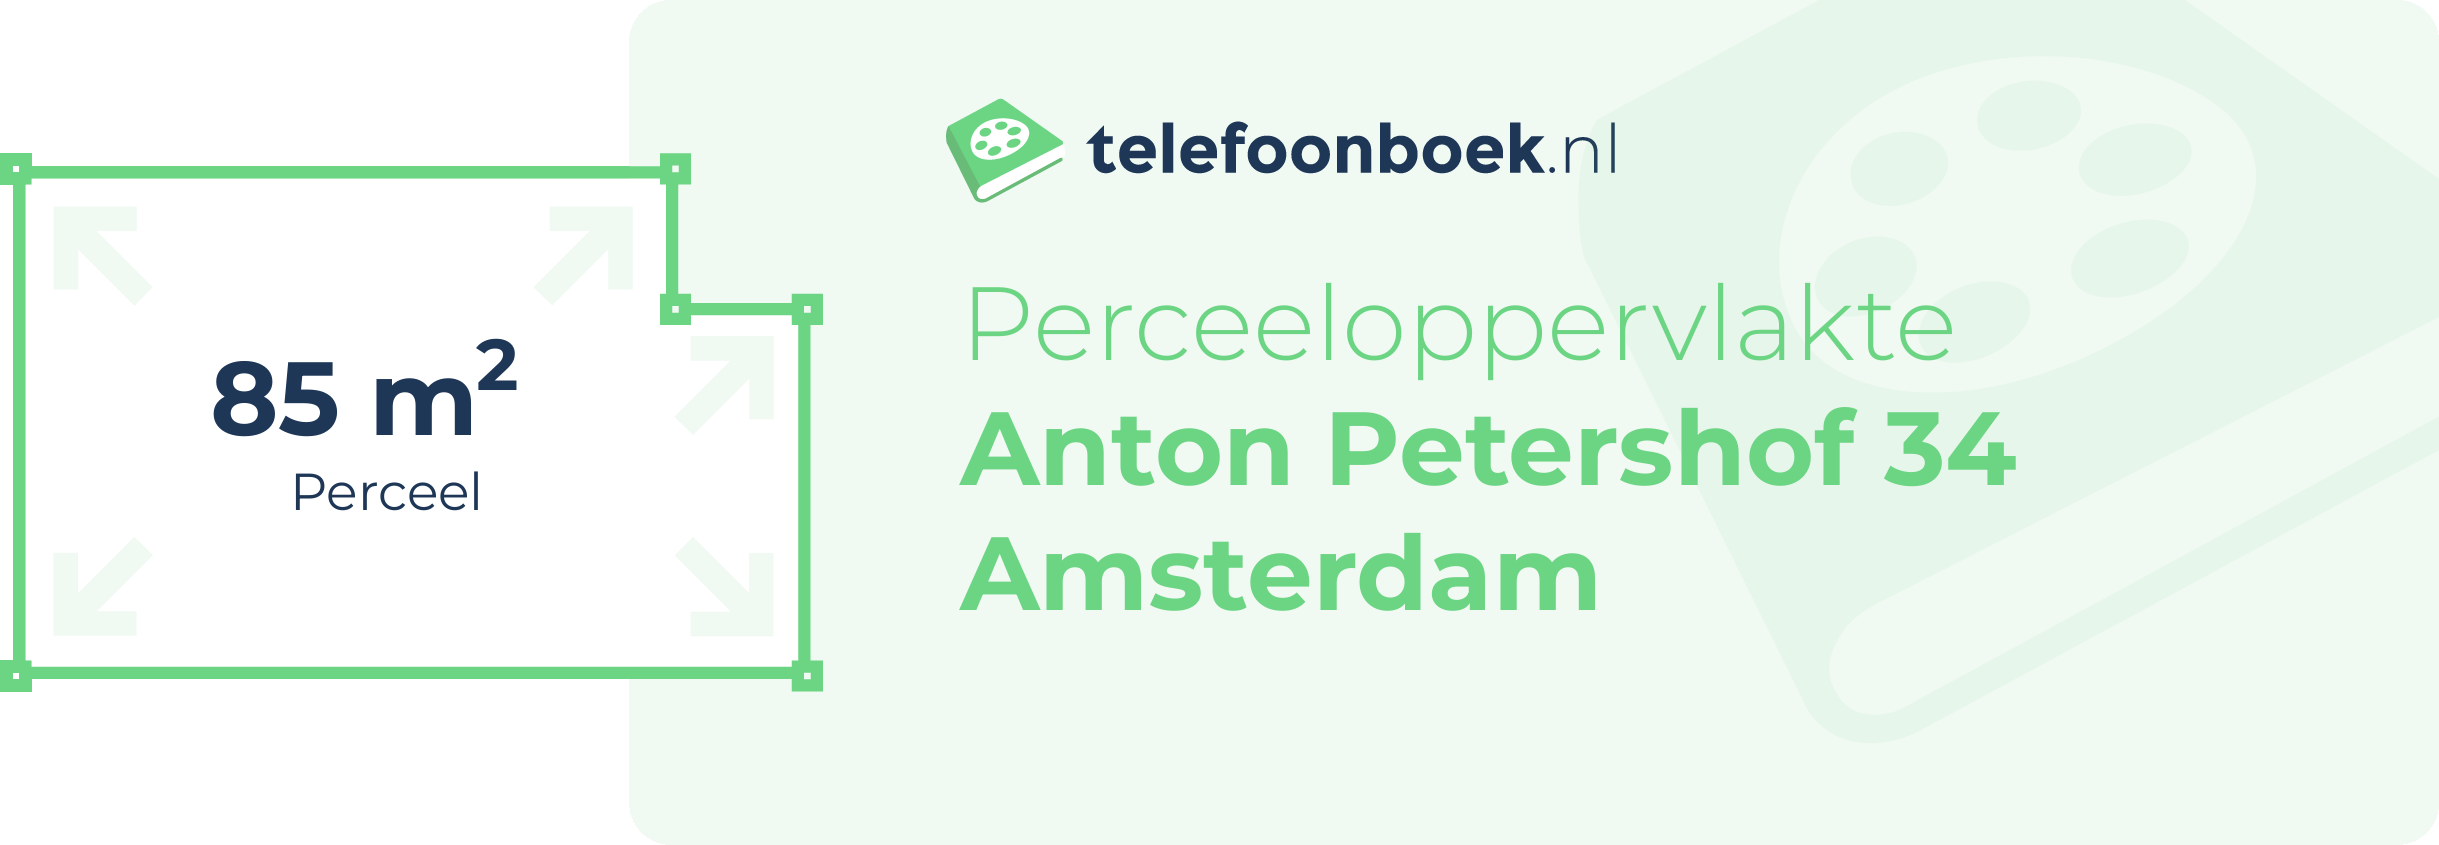 Perceeloppervlakte Anton Petershof 34 Amsterdam